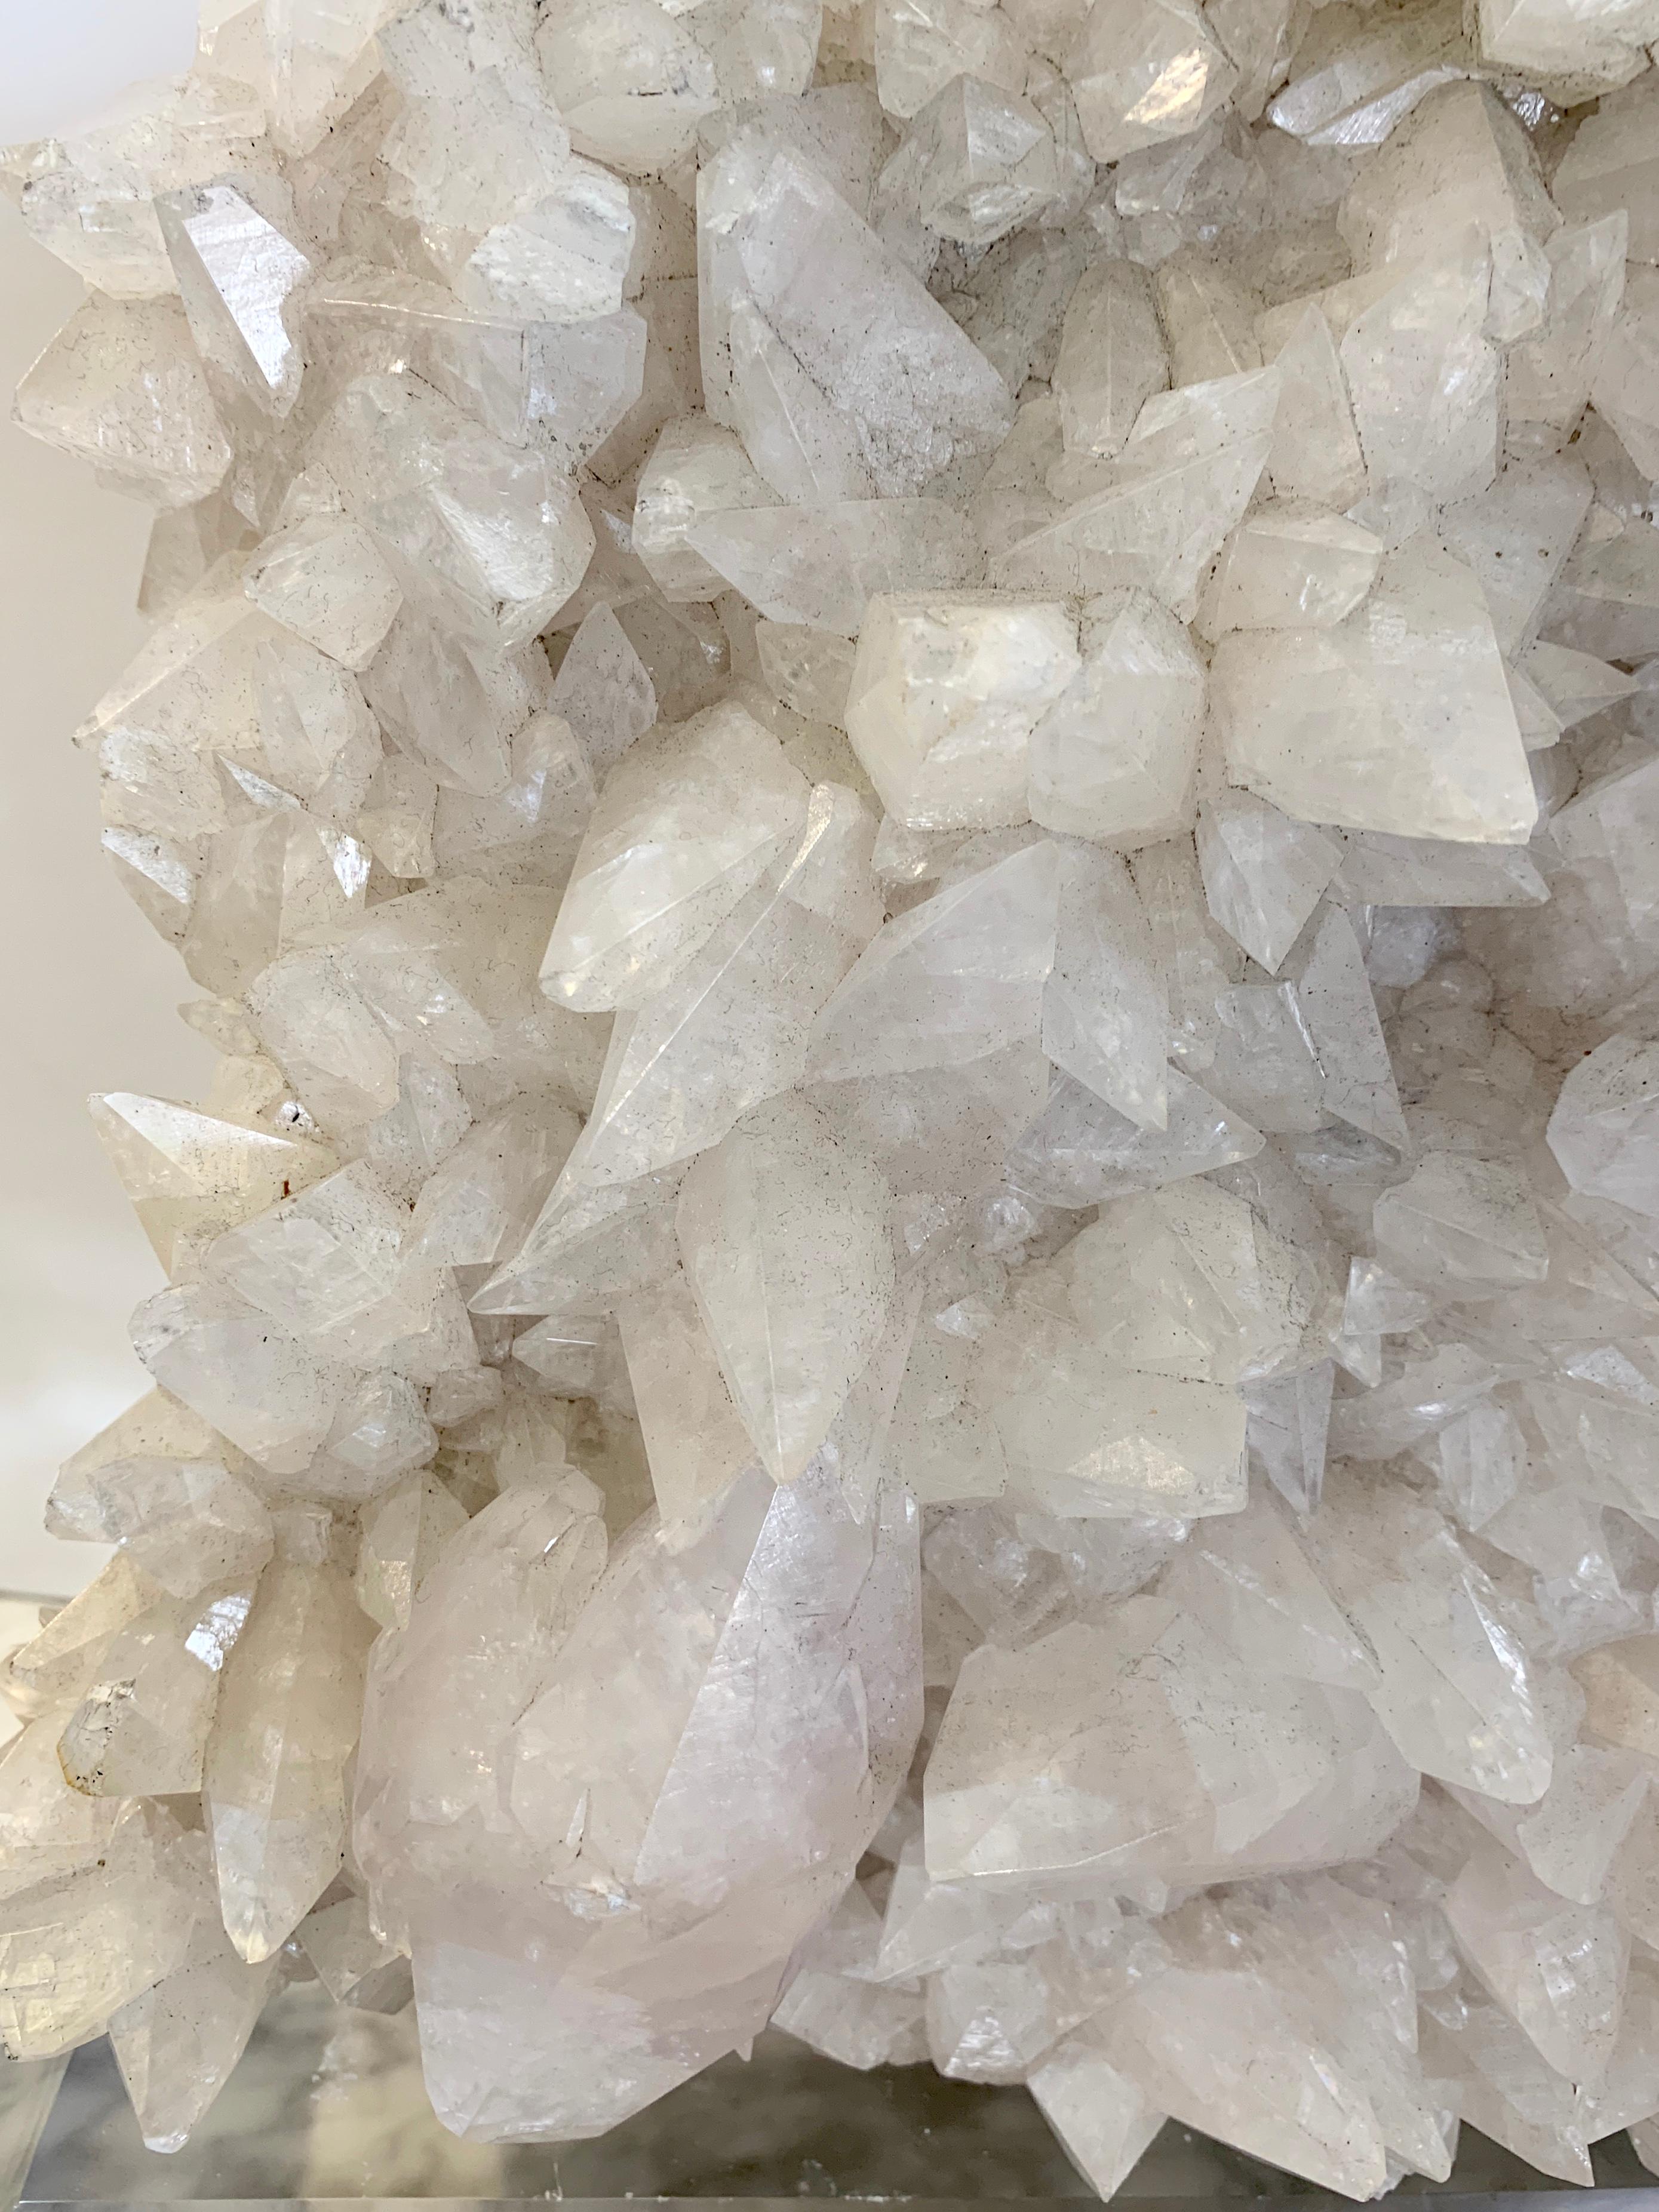 large crystal specimens